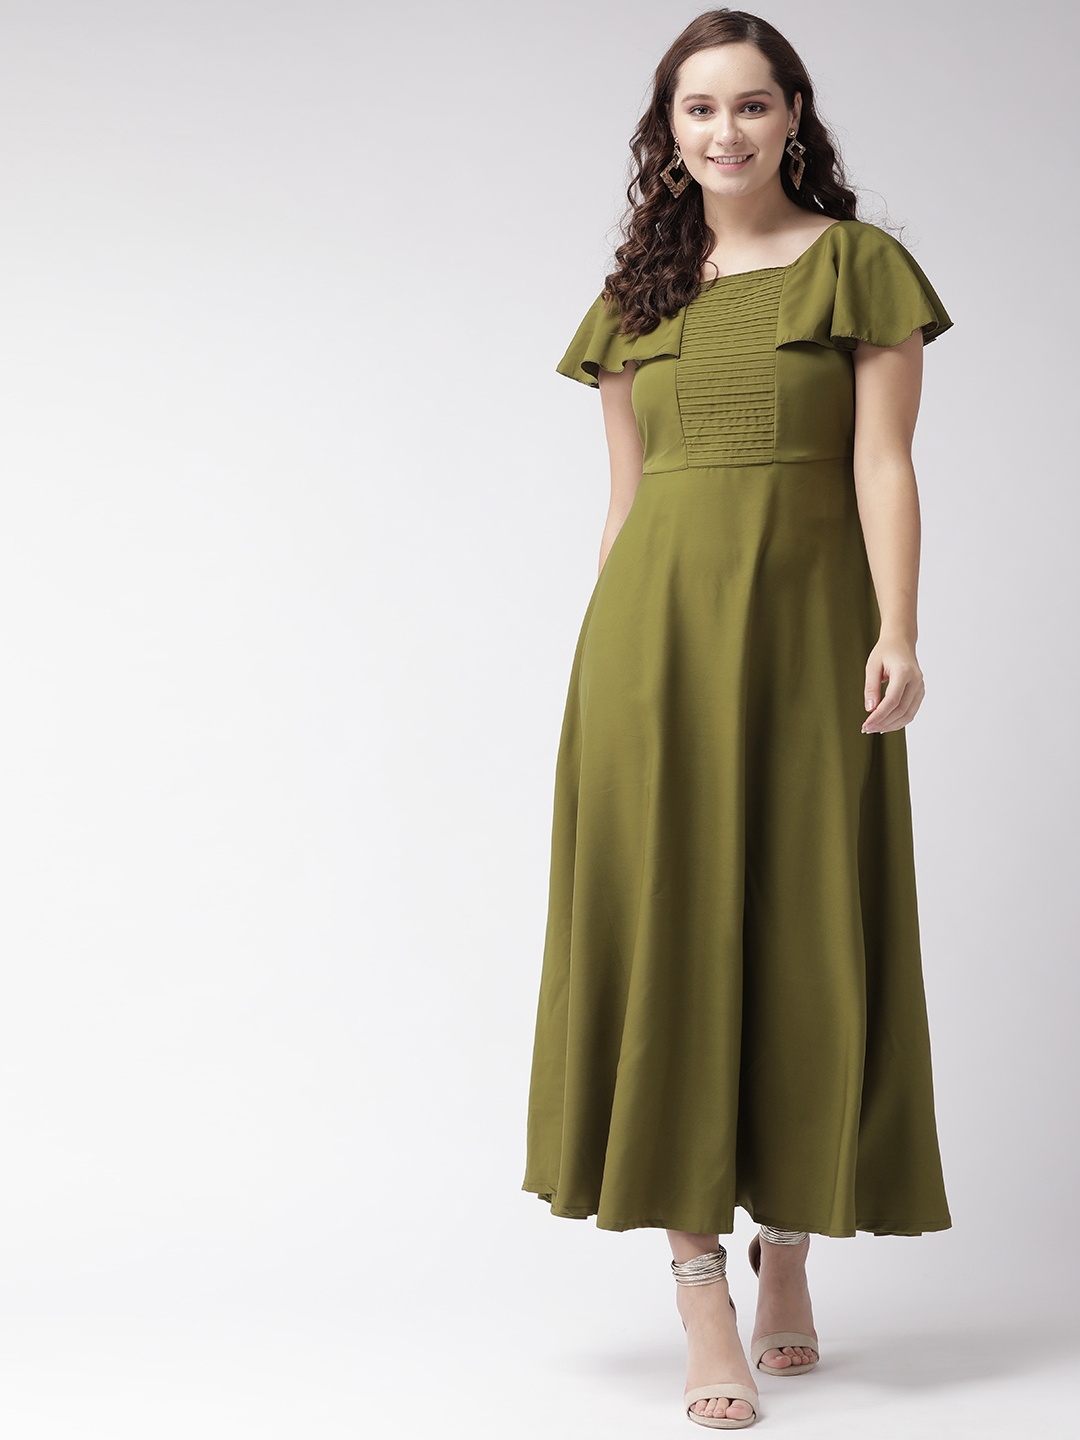 U&F Women Olive Green Solid Maxi Dress